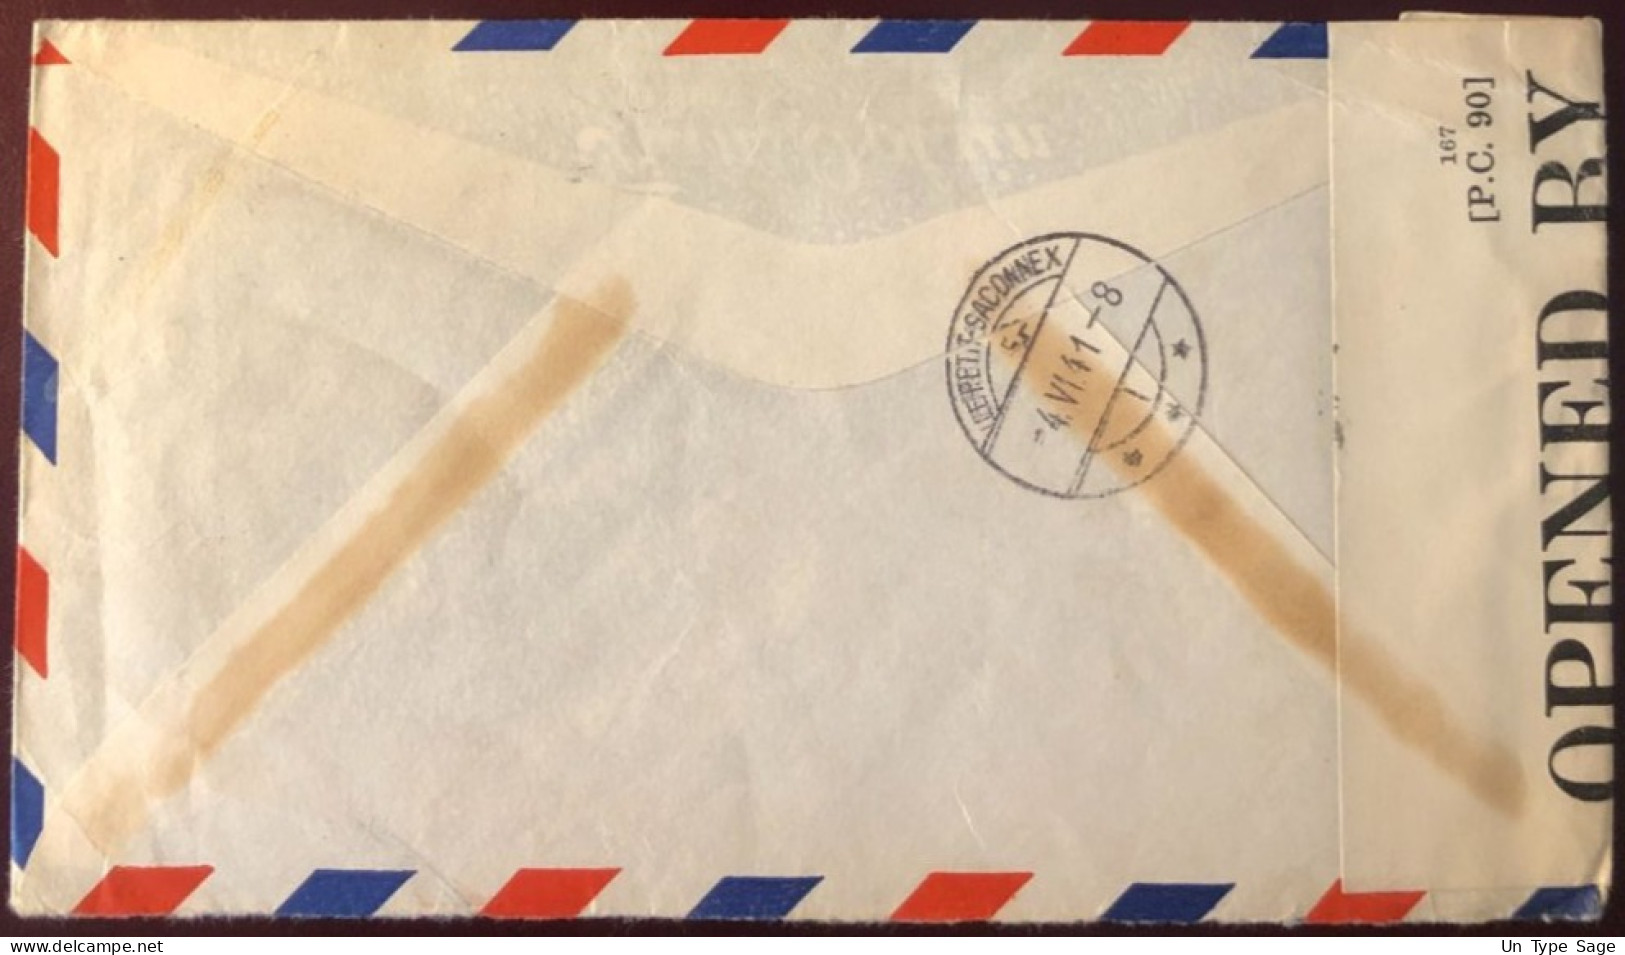 Etats-Unis, Divers PA Sur Enveloppe Censurée De New-York 22.5.1941 Pour La Suisse - (B2704) - Poststempel